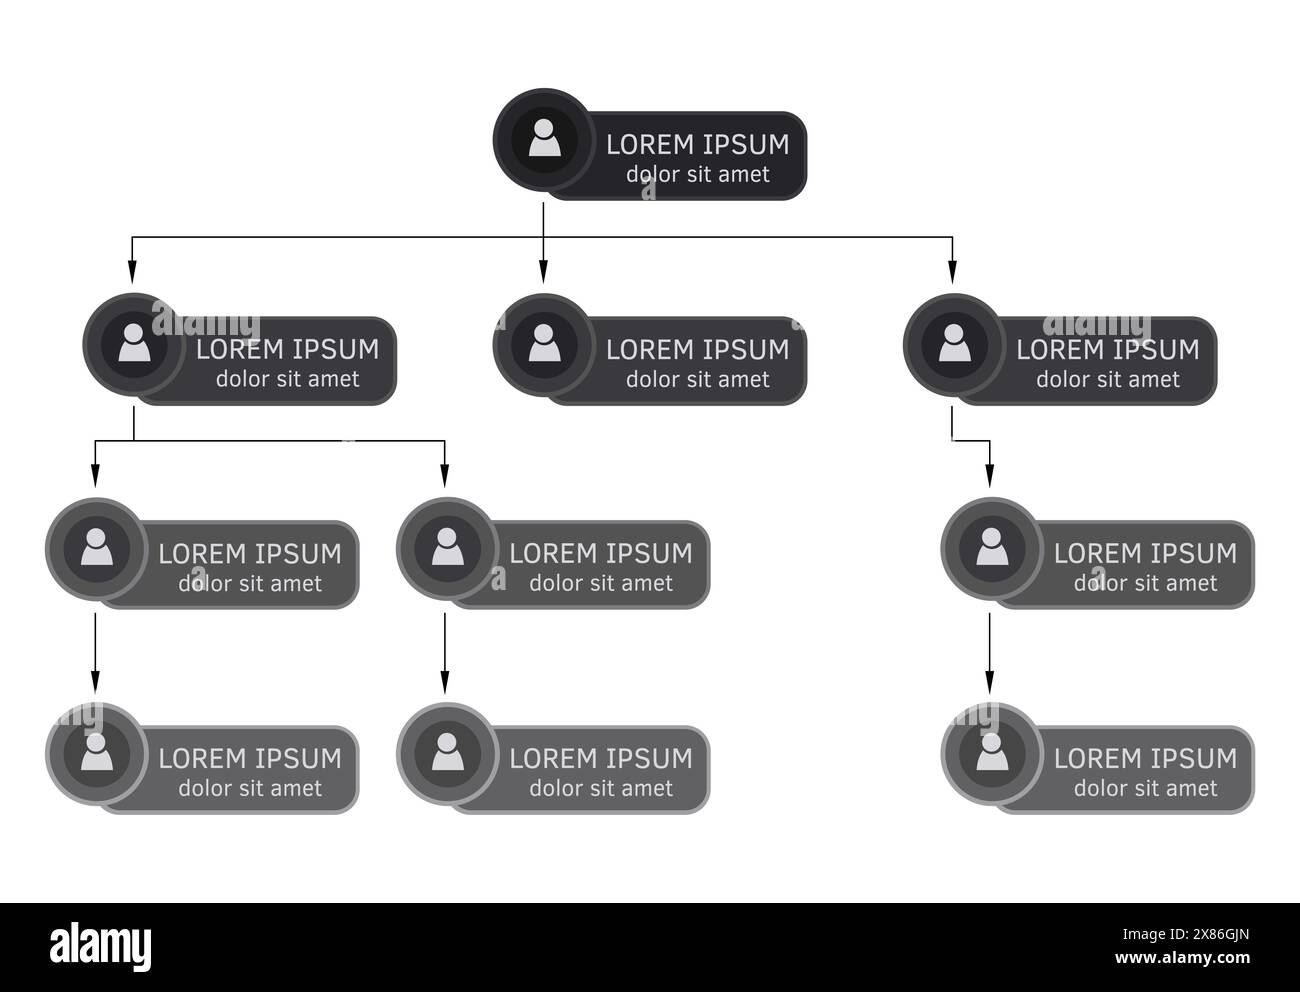 Concept coloré de structure d'entreprise, schéma d'organigramme d'entreprise avec des icônes de personnes. Illustration vectorielle. Illustration de Vecteur